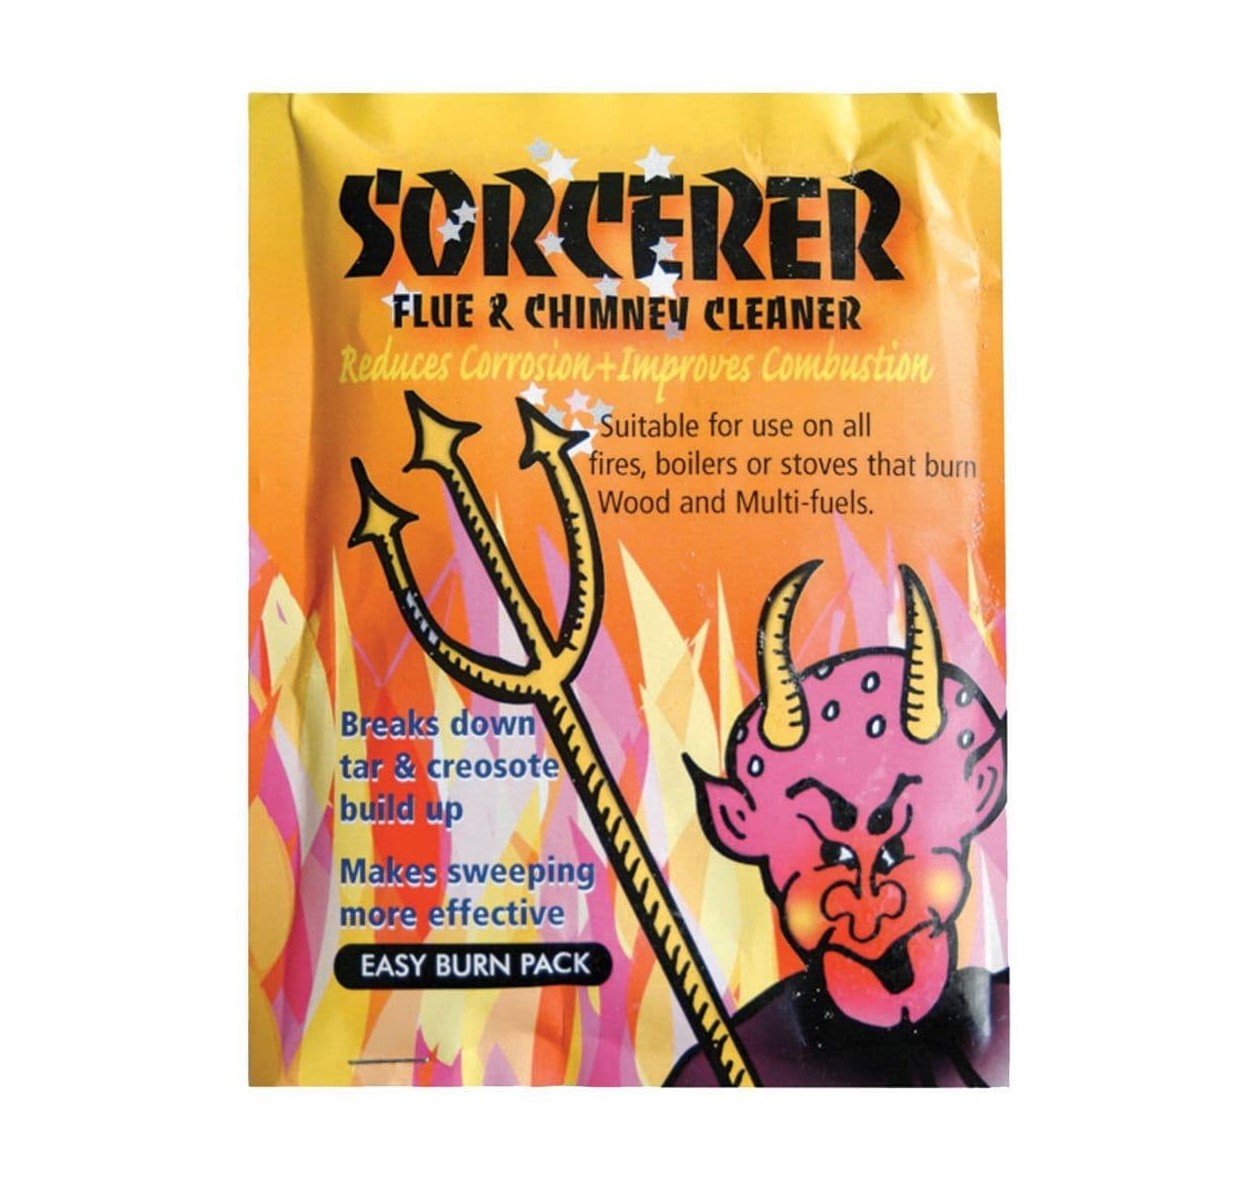 Sorcerer Chimney Cleaner (Pack of 12)